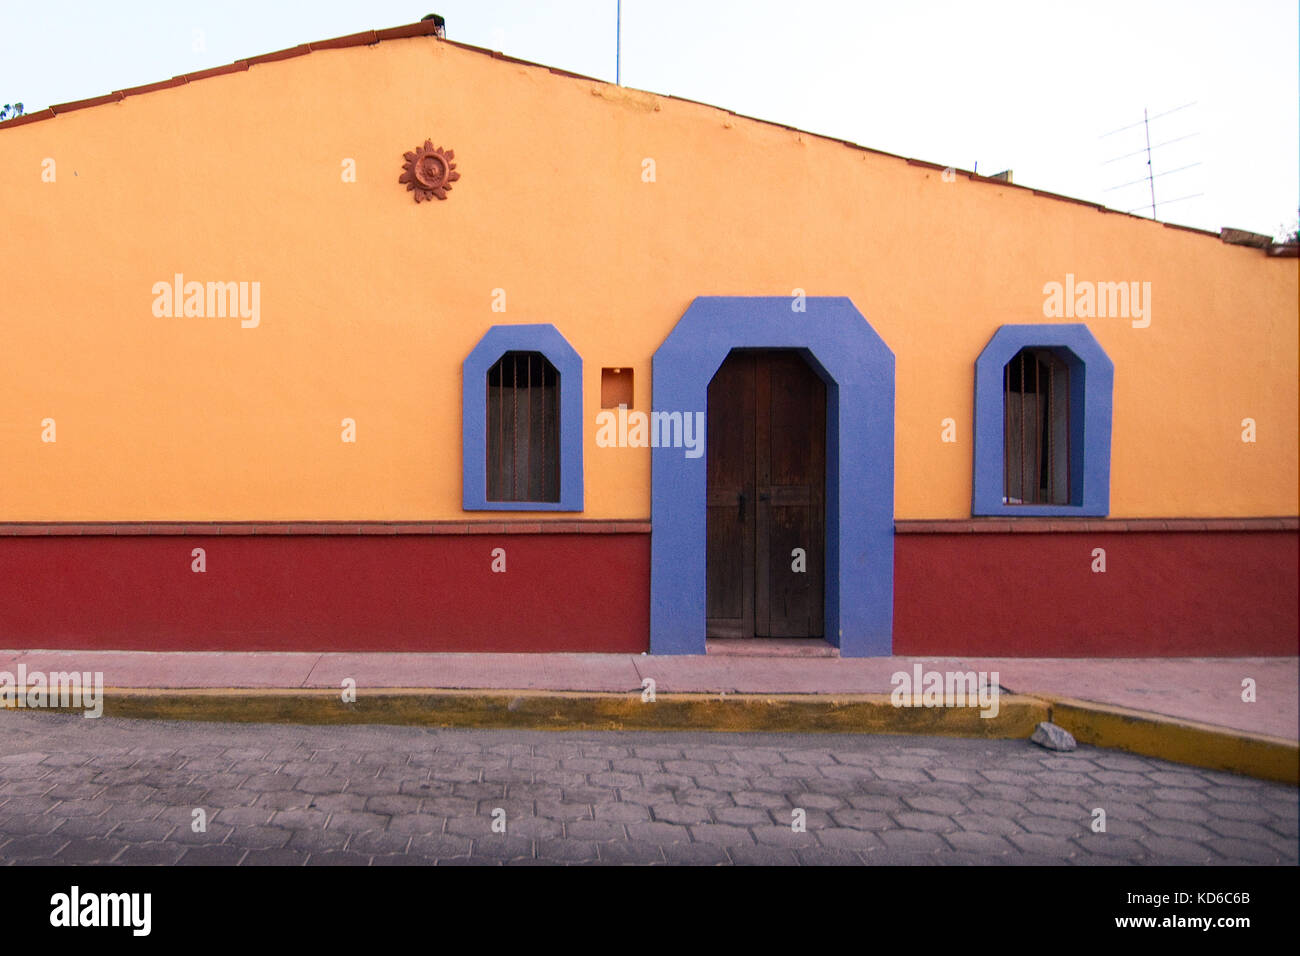 Metepec, Bundesstaat Mexiko, Mexiko - 2017: Ein traditionelles, farbenfrohes Haus in der Nähe des Stadtzentrums. Stockfoto